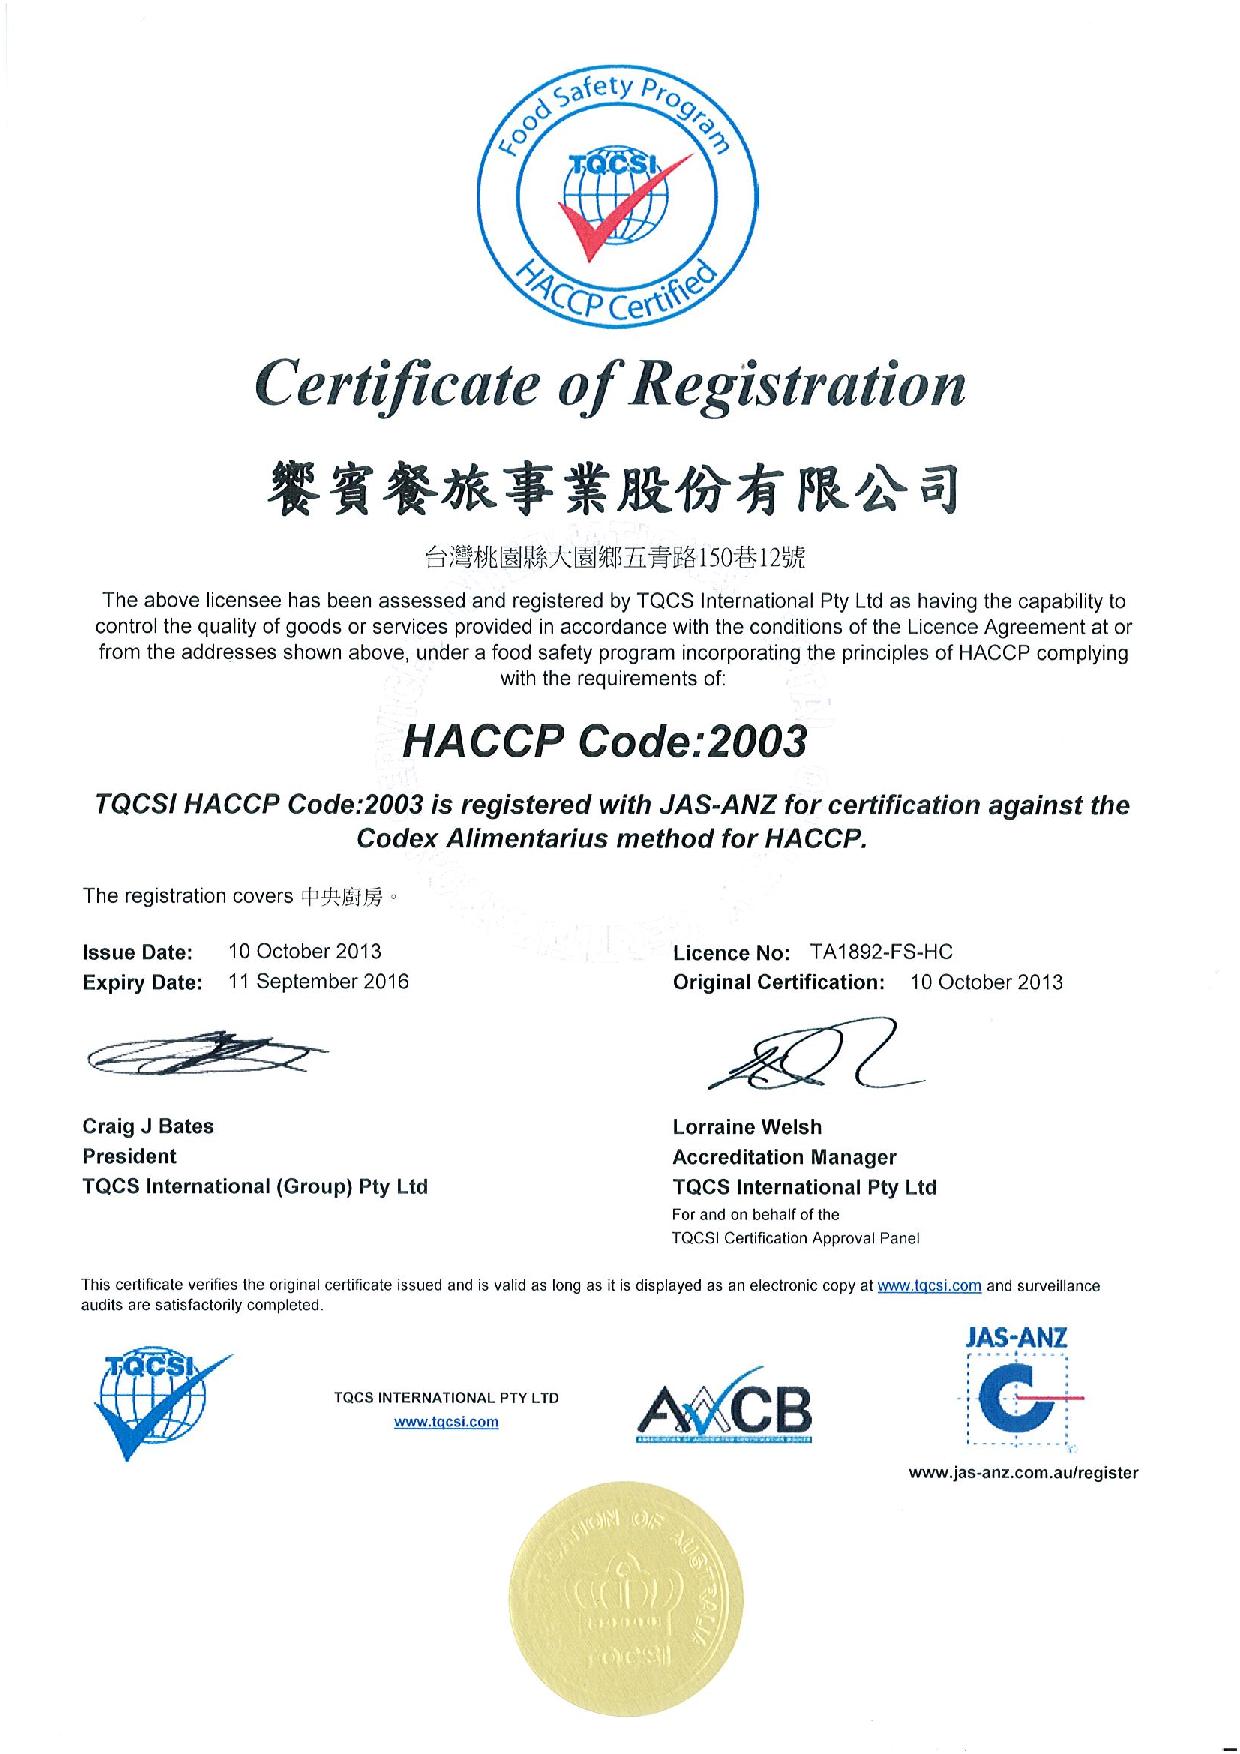 饗賓中央廚房HACCP(危害分析重點管制系統)認證